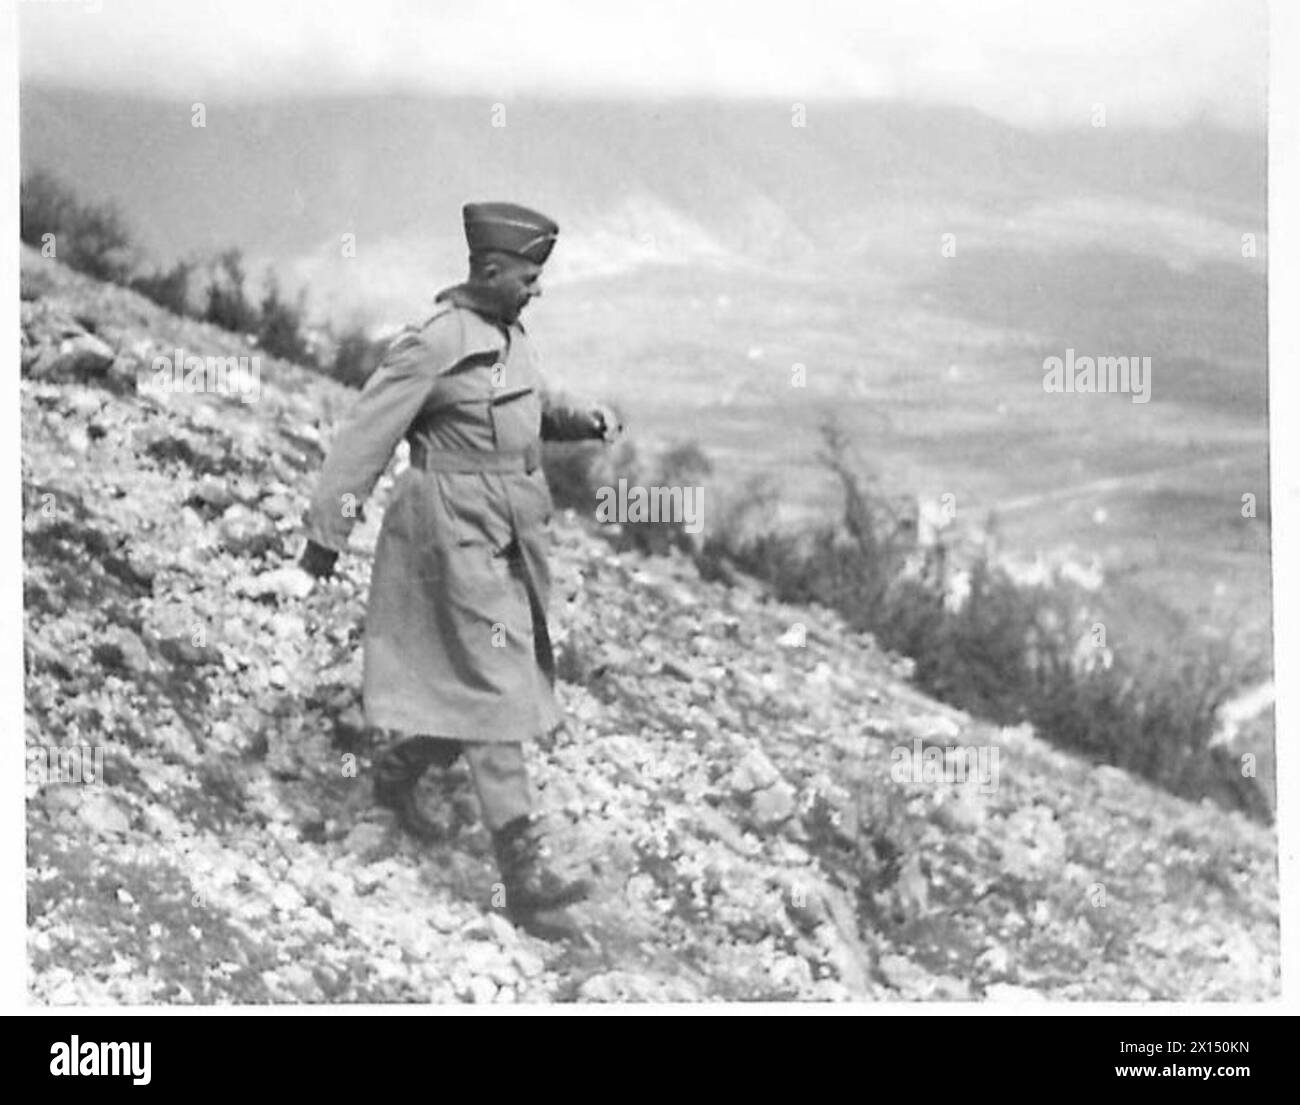 ITALIA : IL VICE C-IN-C VISITA LE TRUPPE ALLEATE - il generale Devers scende sulla collina dopo le manovre dell'esercito britannico Foto Stock